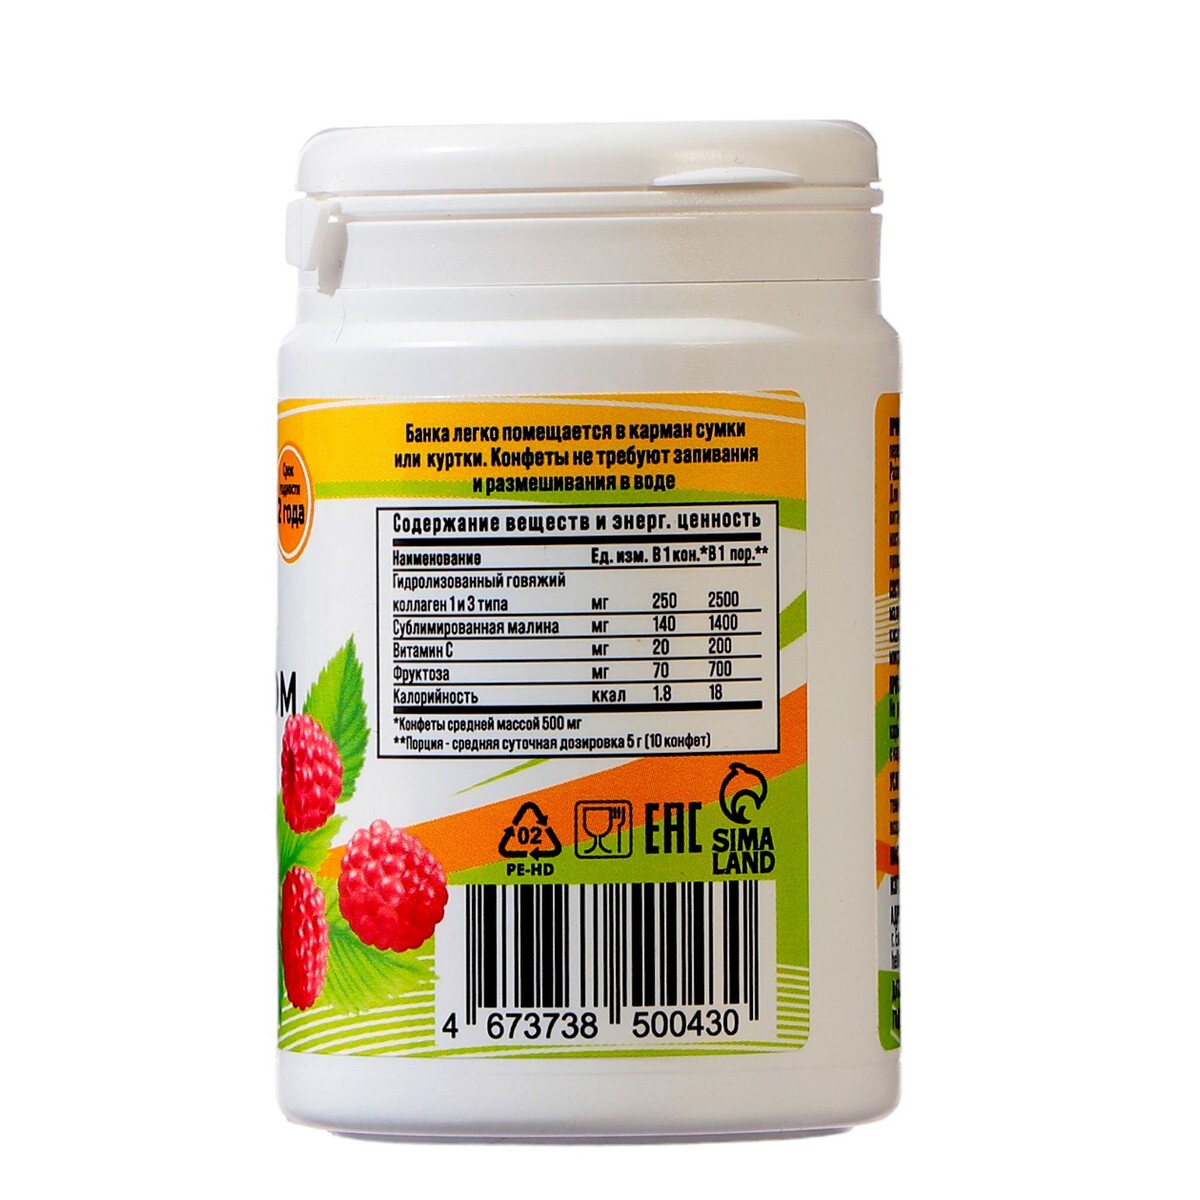 Коллаген жевательный vitamuno с натуральной малиной, 100 таблеток по 500 мг Vitamuno 08129610 - фото 3